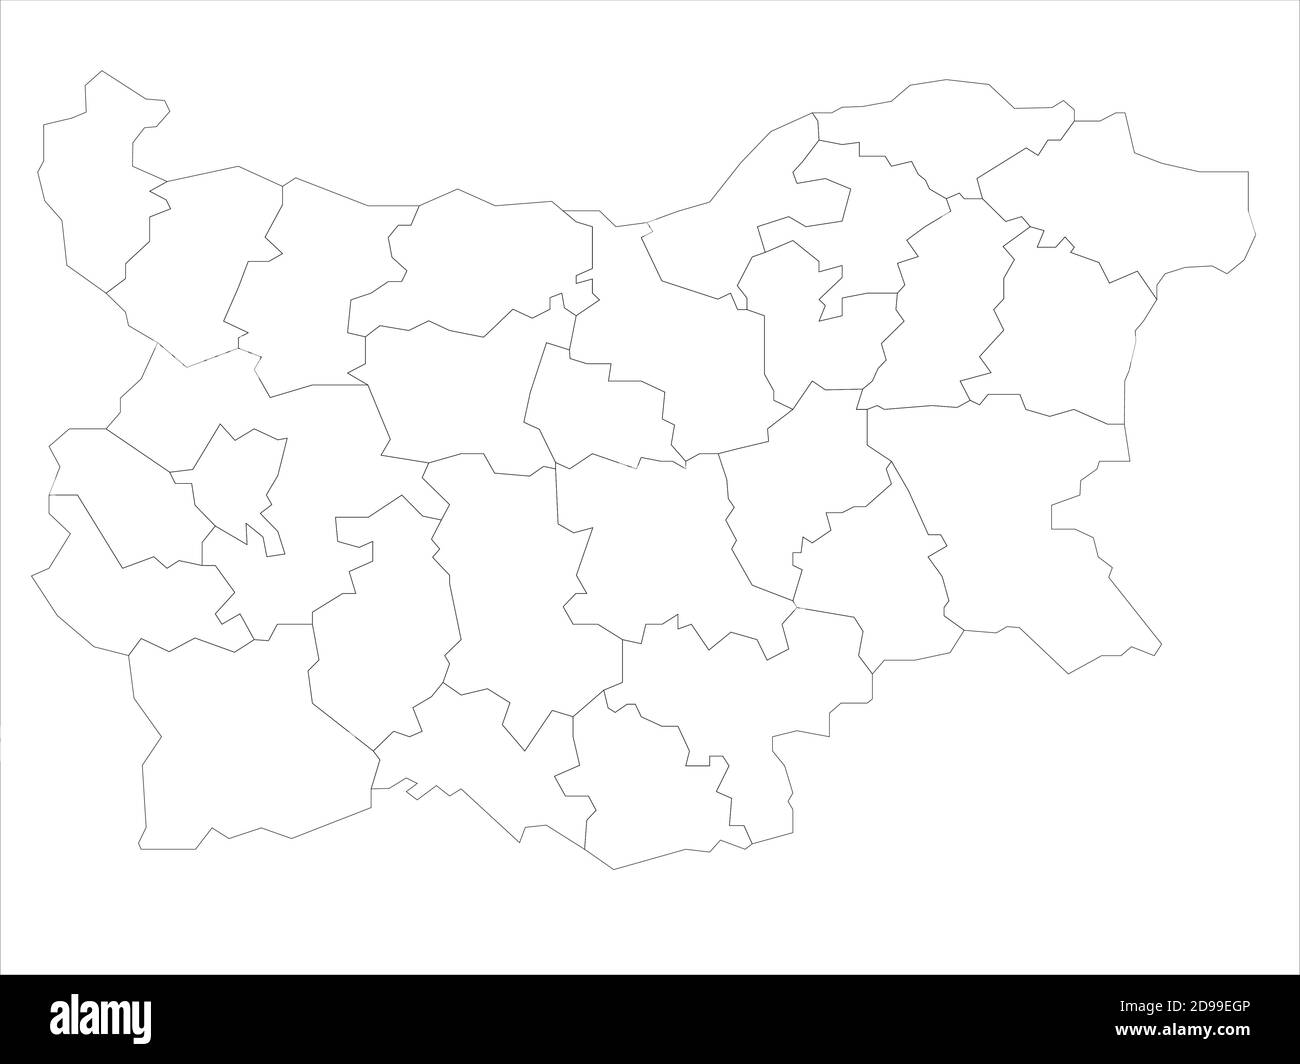 Leere politische Landkarte von Bulgarien. Verwaltungsabteilungen - Staaten. Einfache Vektorkarte mit schwarzer Kontur Stock Vektor